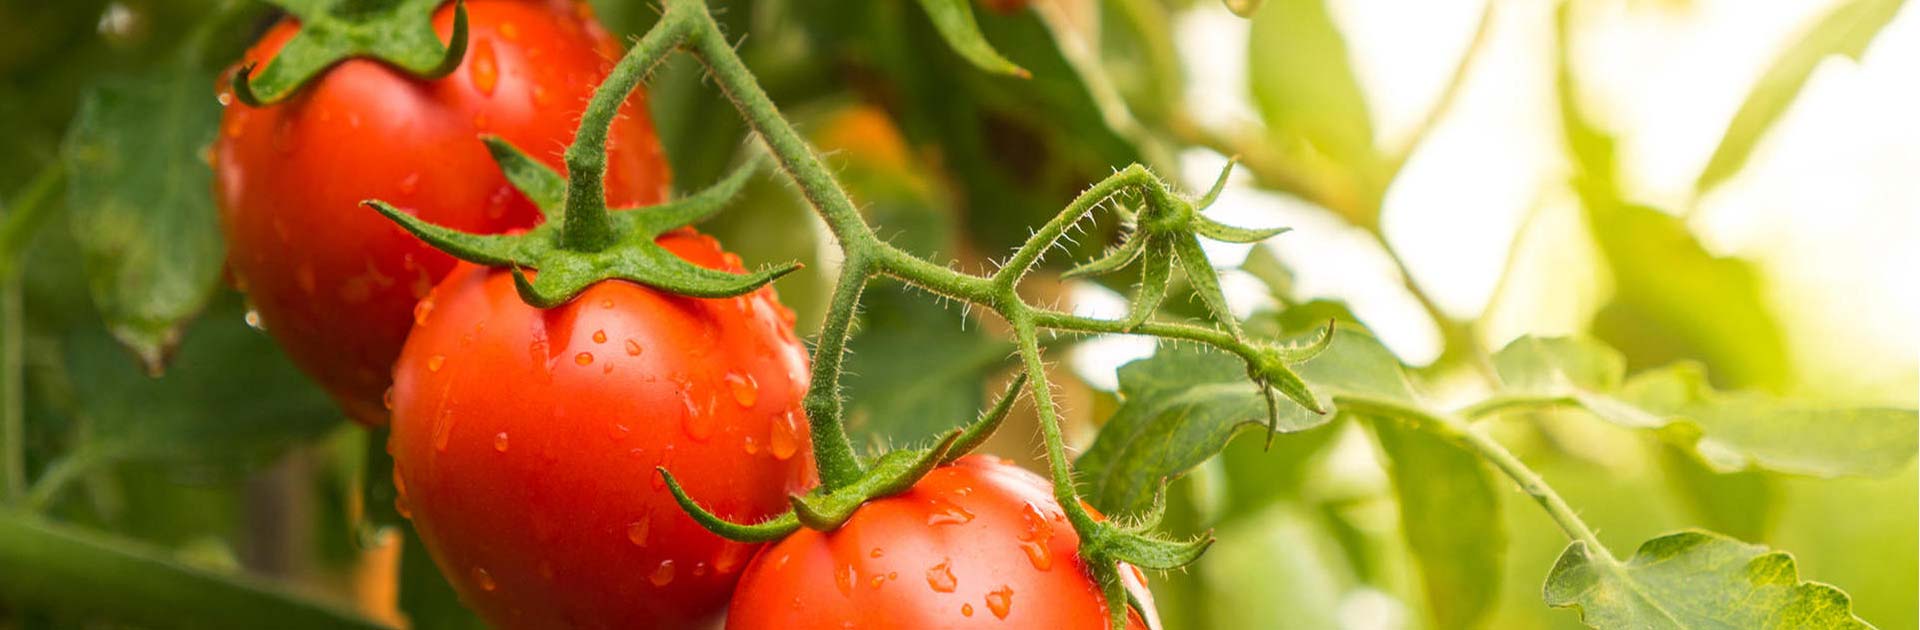 azura-producteur-fruits-et-legumes-specialiste-tomates2